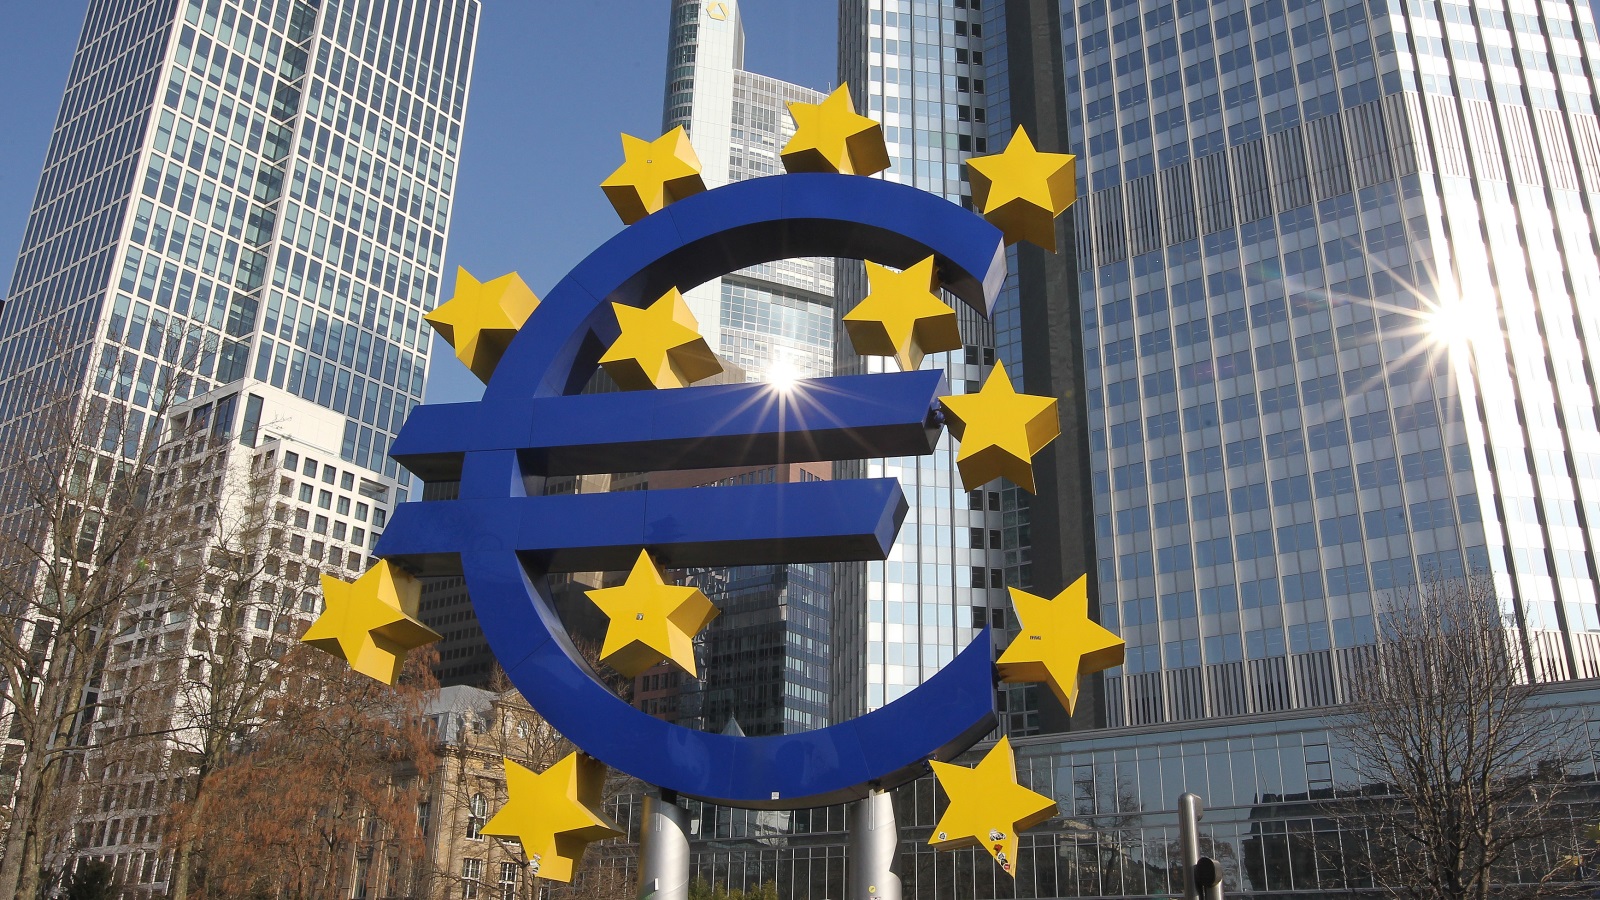 سياسة سعر الفائدة التي اعتمدها البنك المركزي الأوروبي رفعت الناتج الإجمالي في منطقة اليورو بنسبة 2.7 نقطة نهاية 2018 (غيتي)